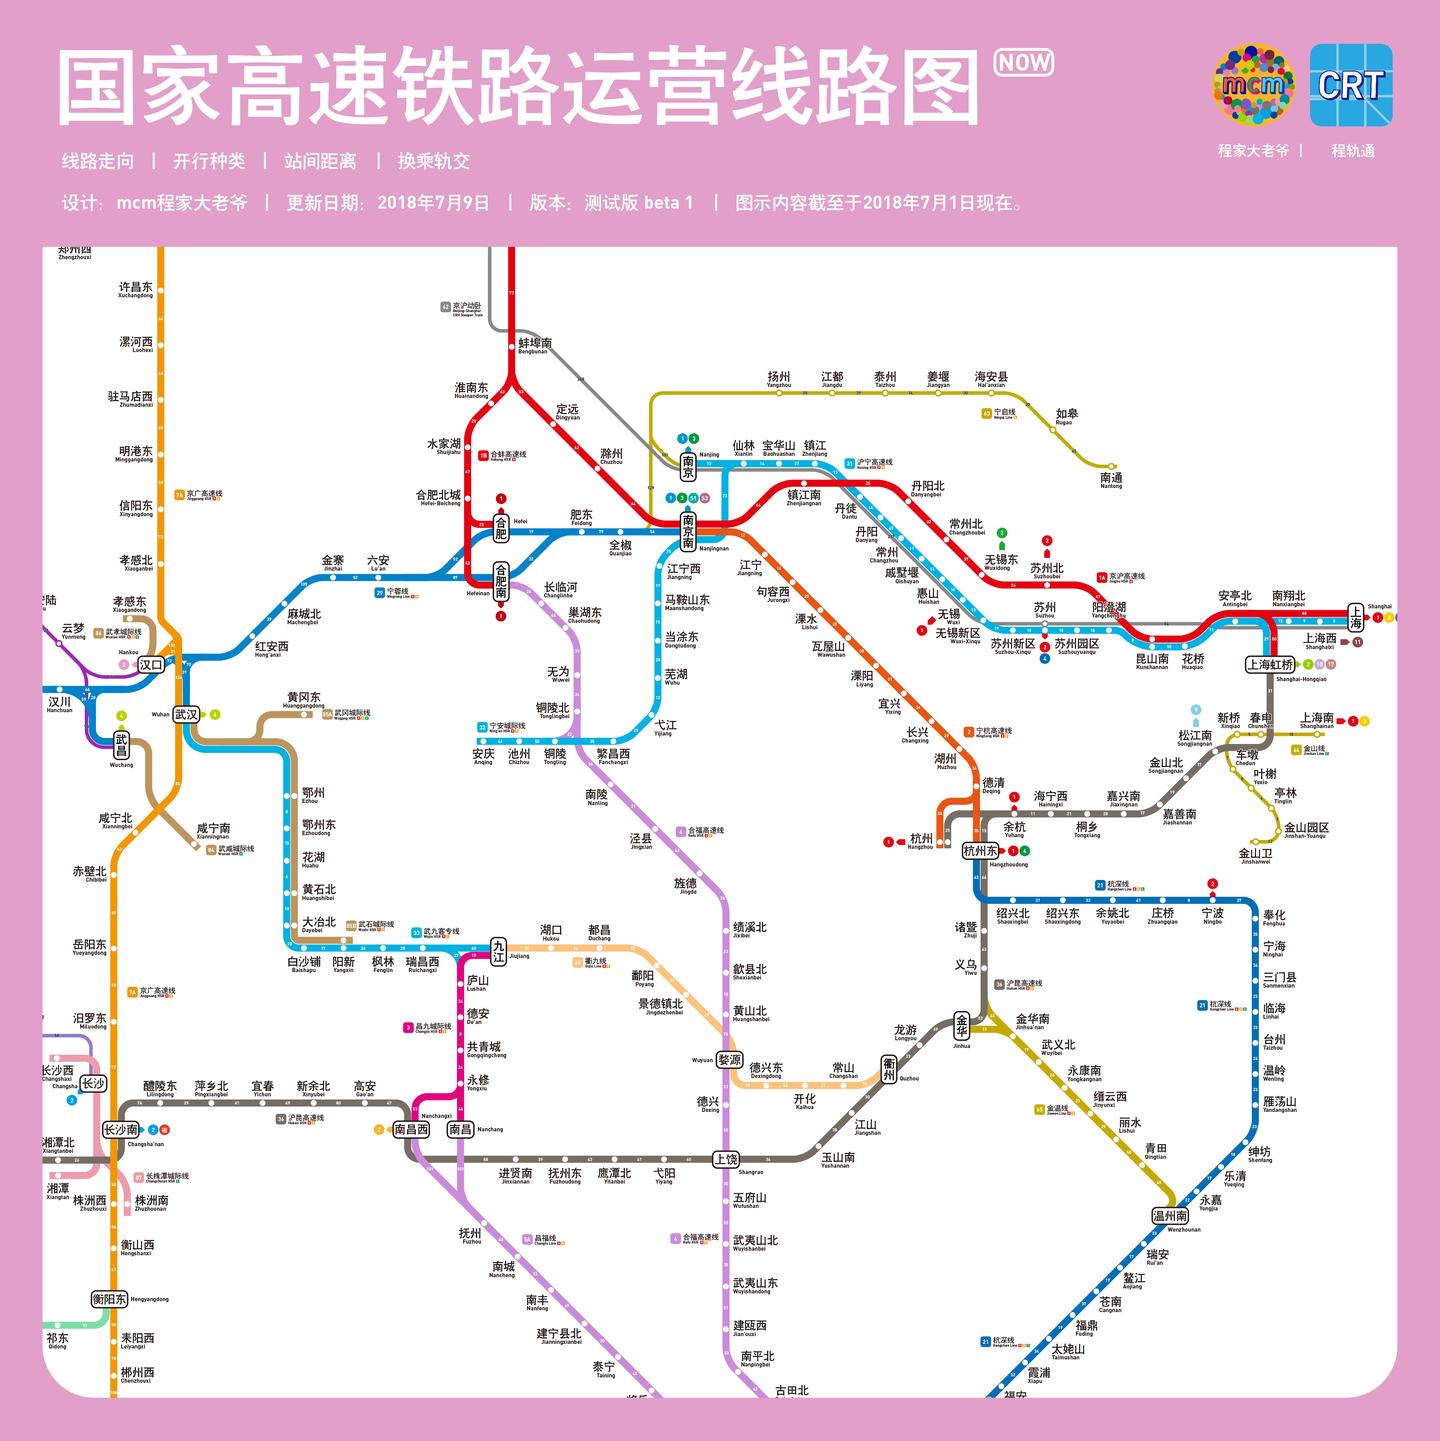 最美高铁全线开通运营[组图]_图片中国_中国网